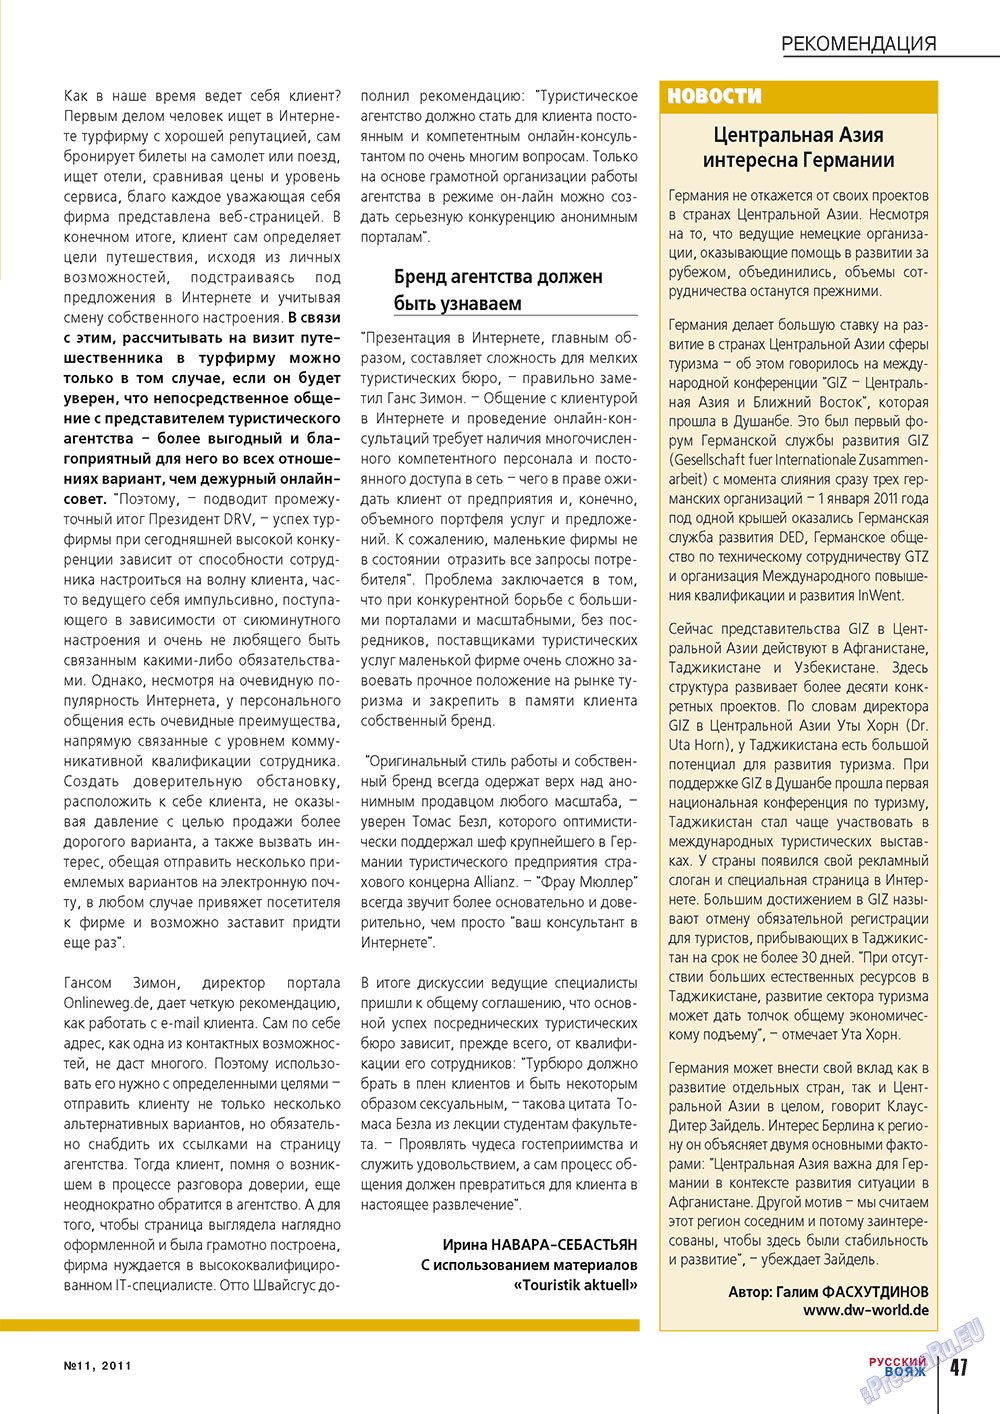 Русский вояж (журнал). 2011 год, номер 11, стр. 47